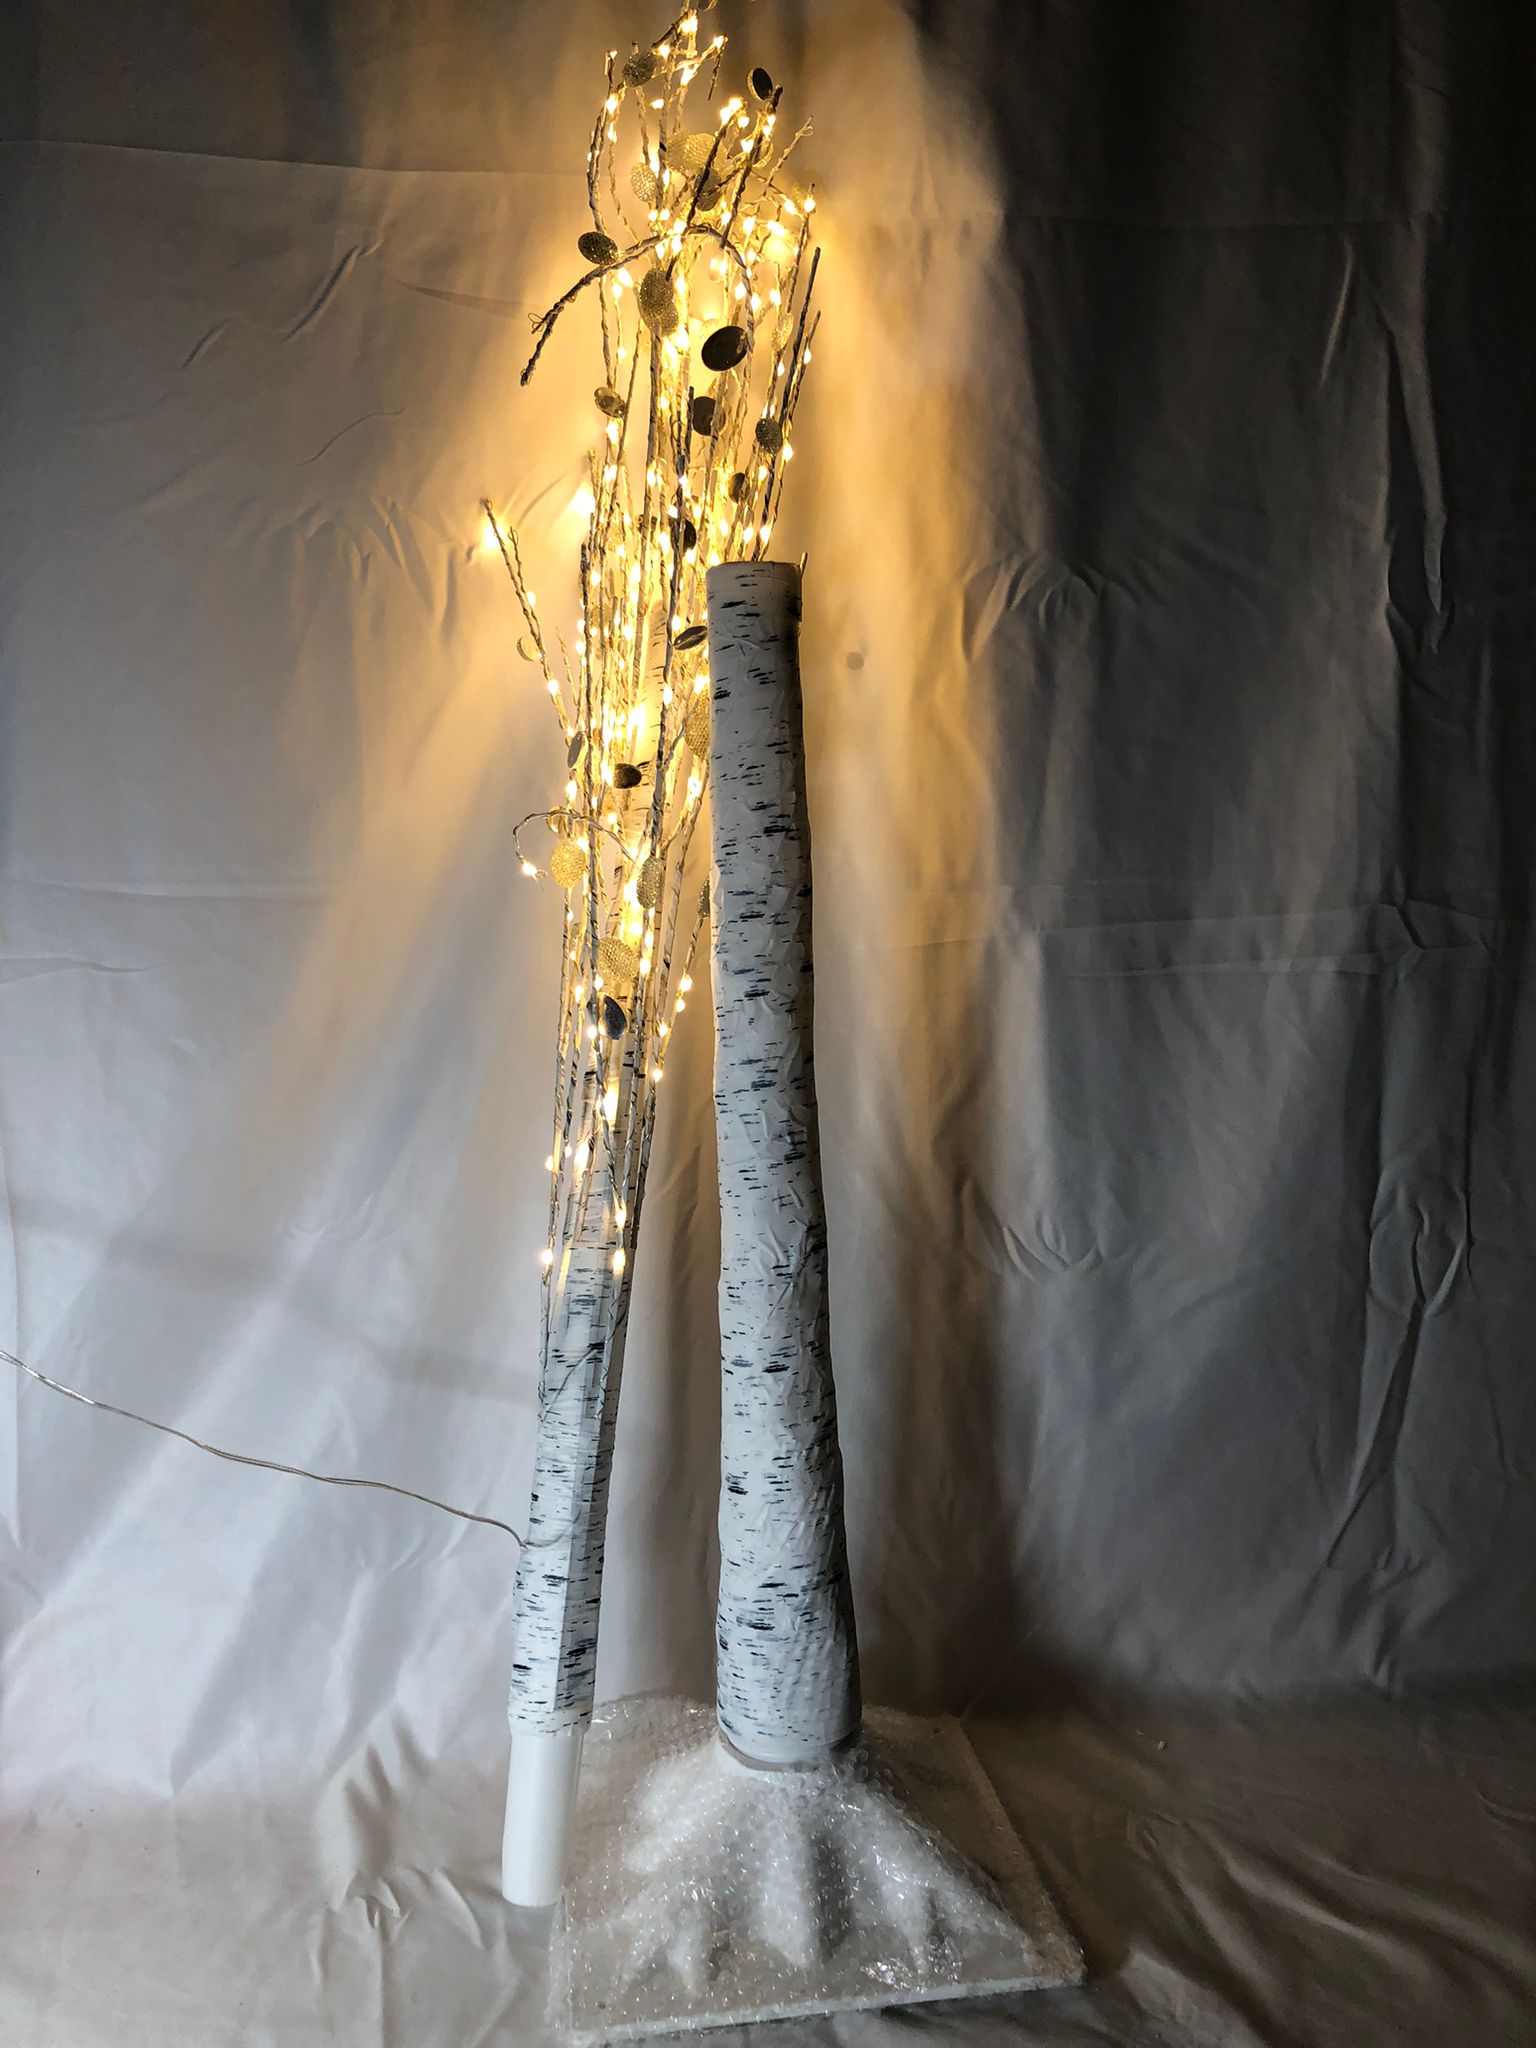 Mr. Christmas 5' Illuminated Plug-In Gem Tree